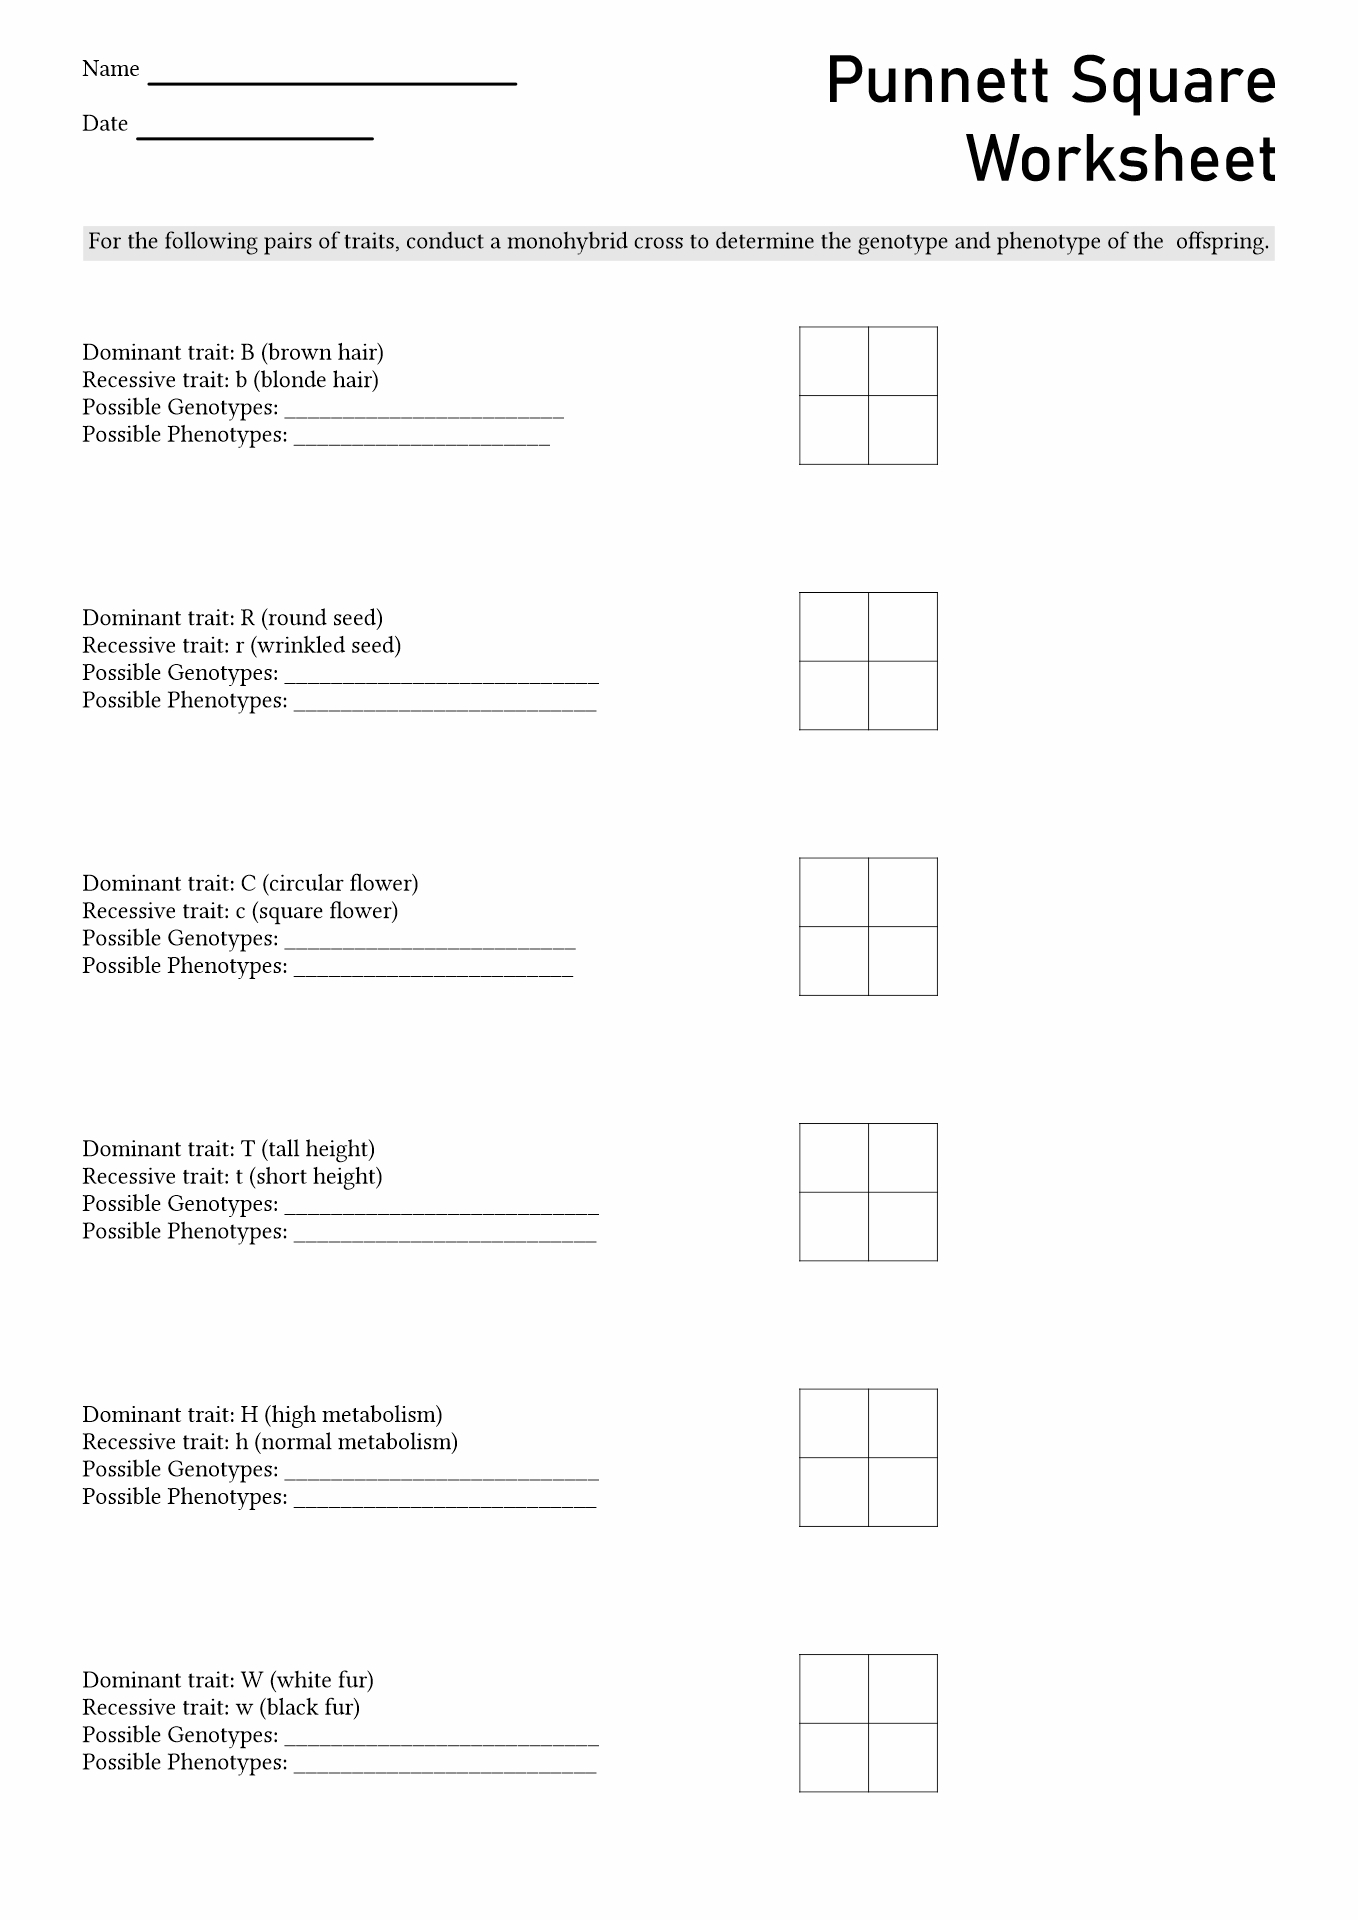 15-best-images-of-punnett-square-worksheet-answer-key-punnett-square-worksheet-1-answer-key